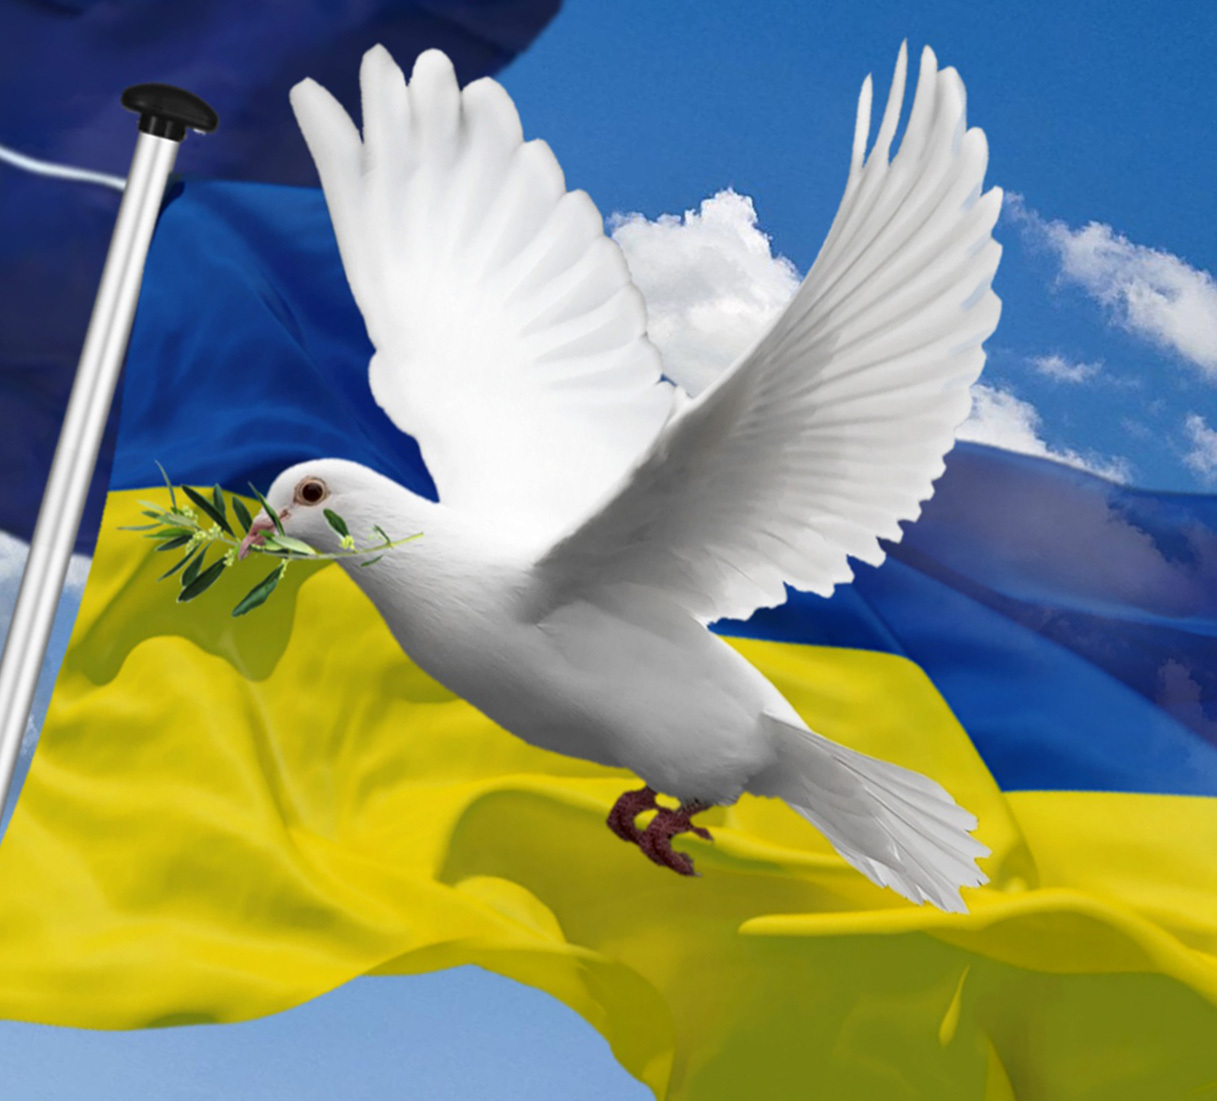 Andreas Zumach zum Thema: 'Ukrainekrieg - was jetzt? Gibt es noch eine Friedenspolitik?'